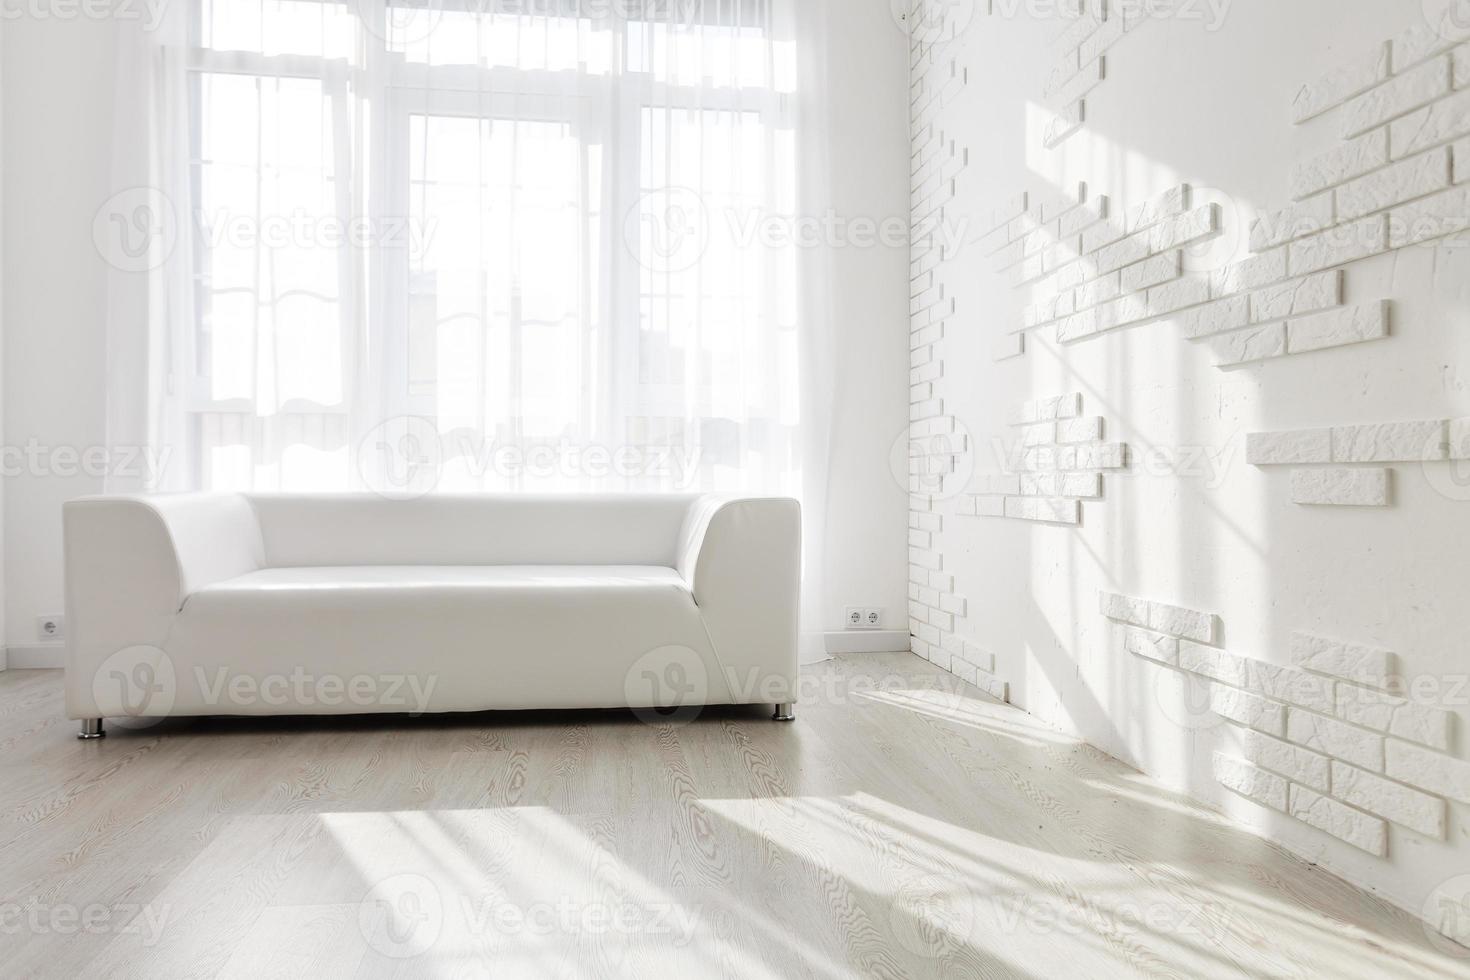 ljus, minimalistisk levande rum interiör med vit soffa står nära de fönster foto